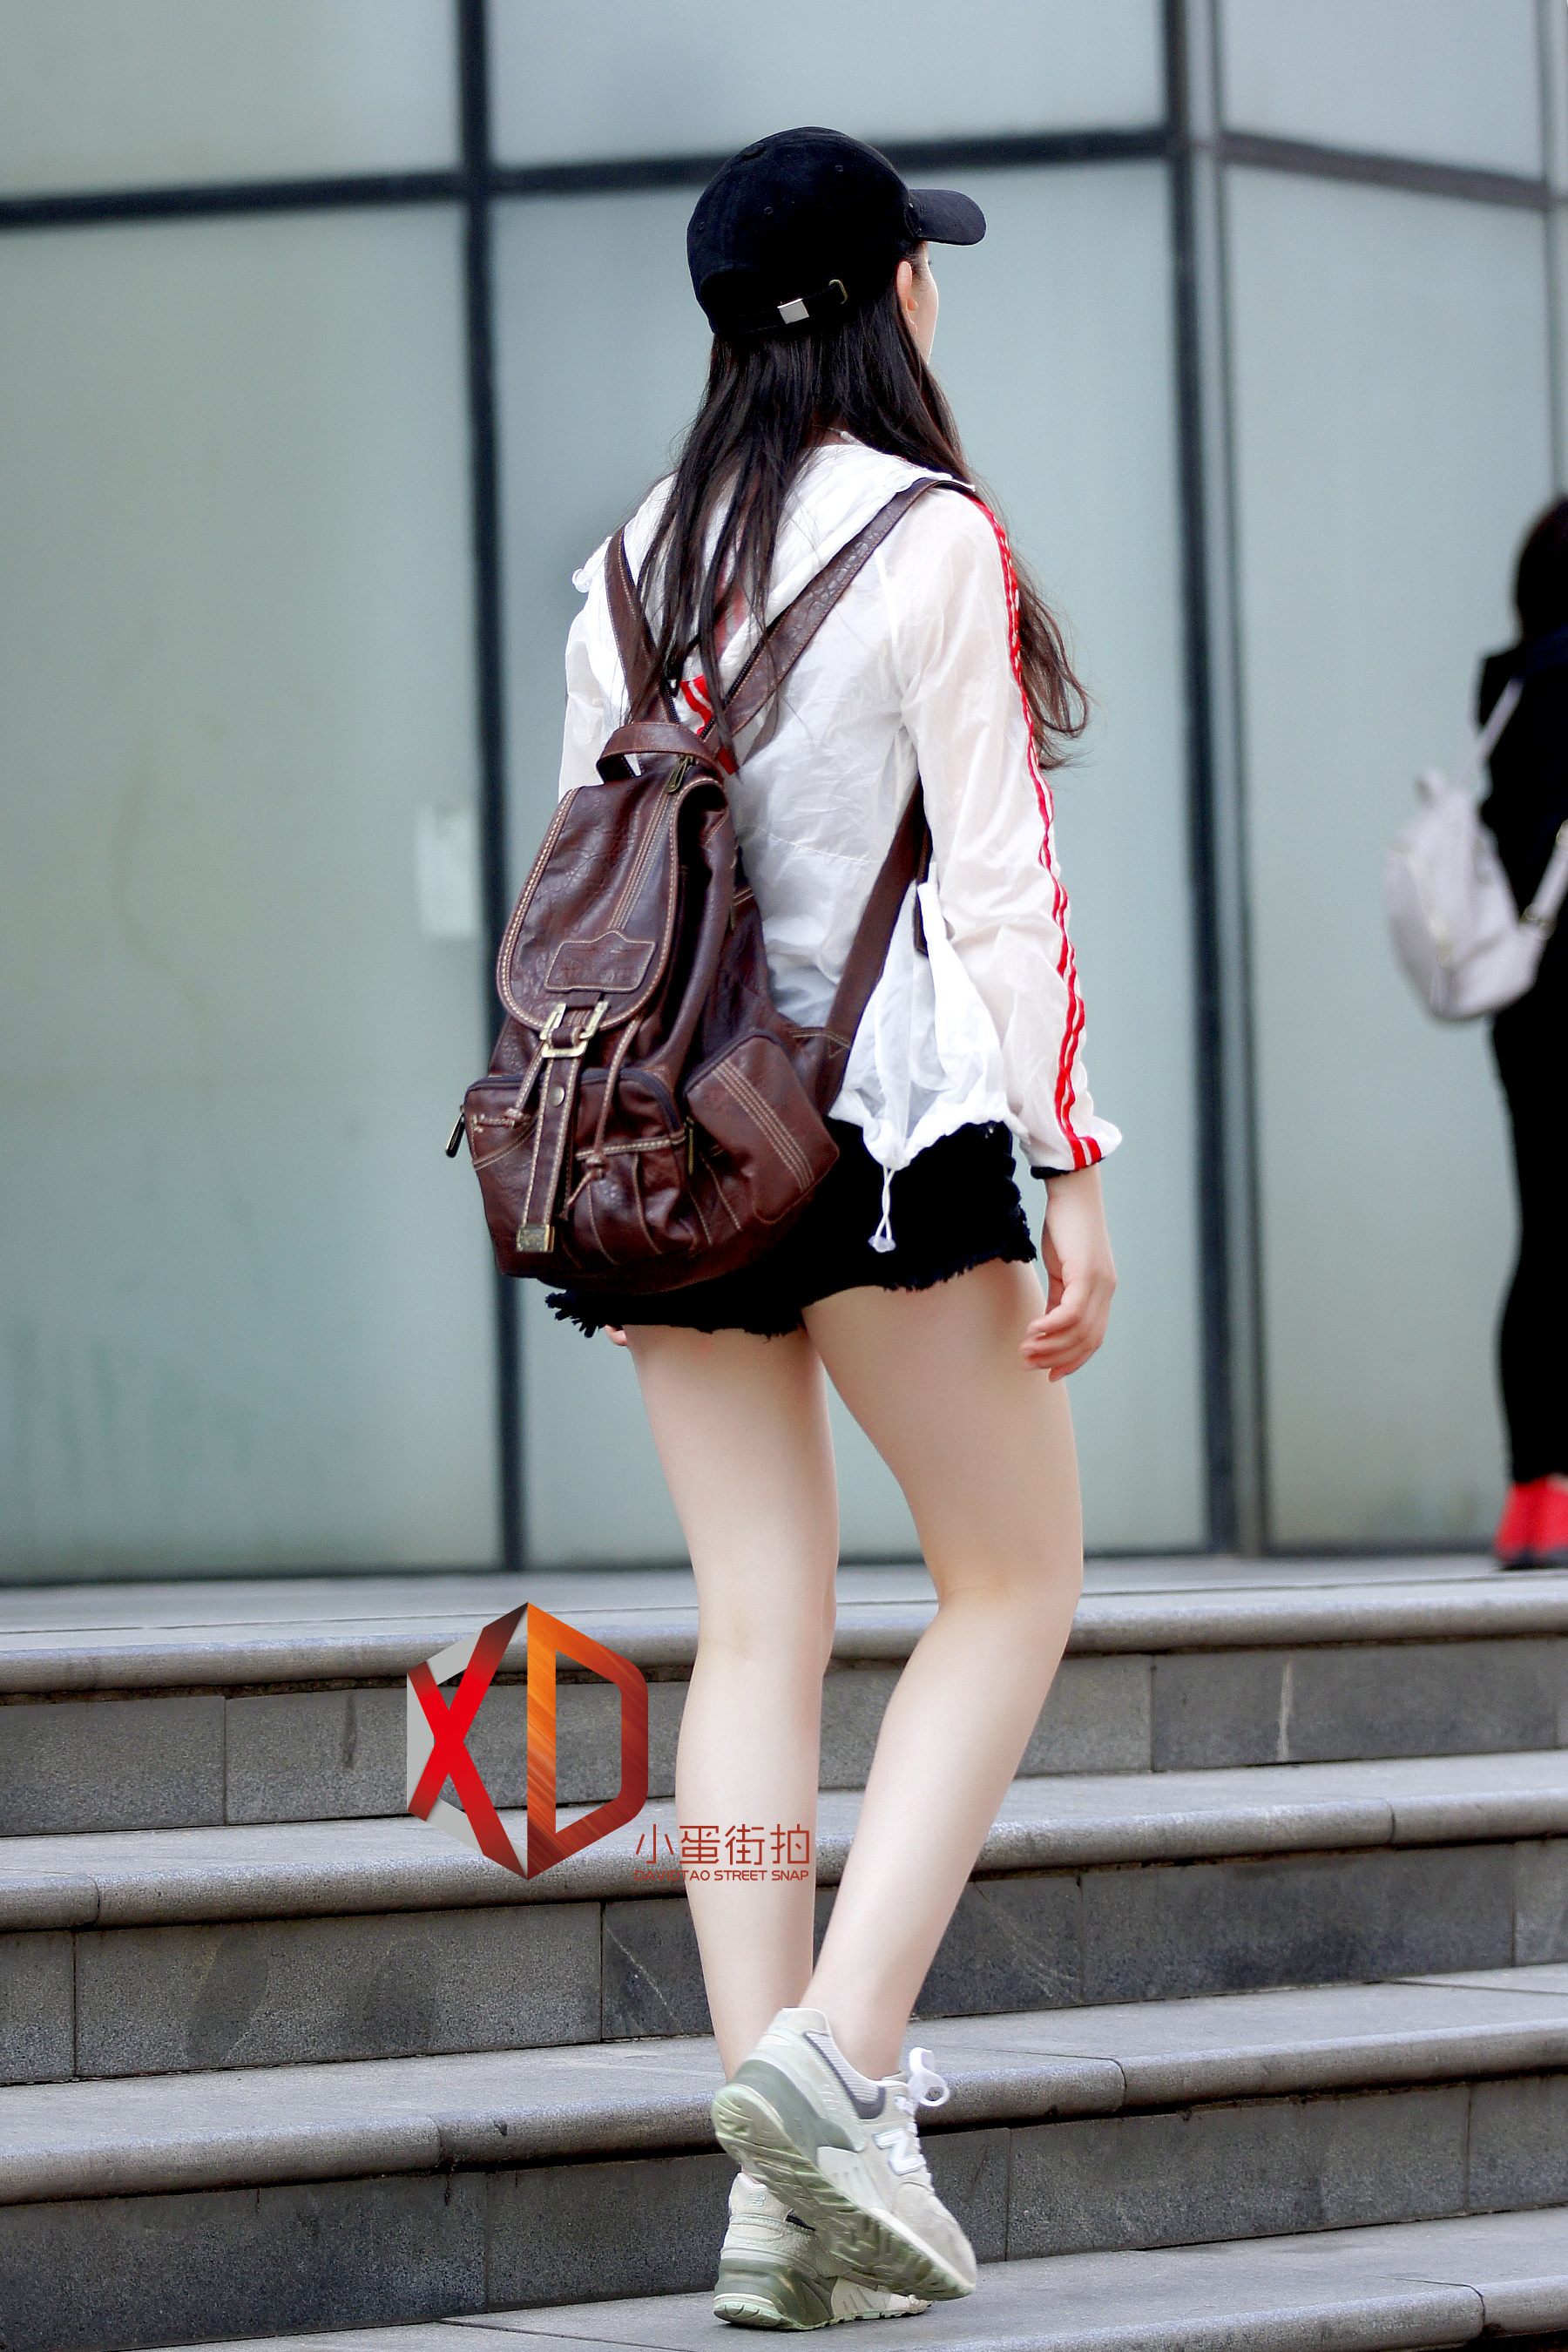 街拍深圳:超短裤,大白腿,身材匀称,气质不凡,好性感的美女啊